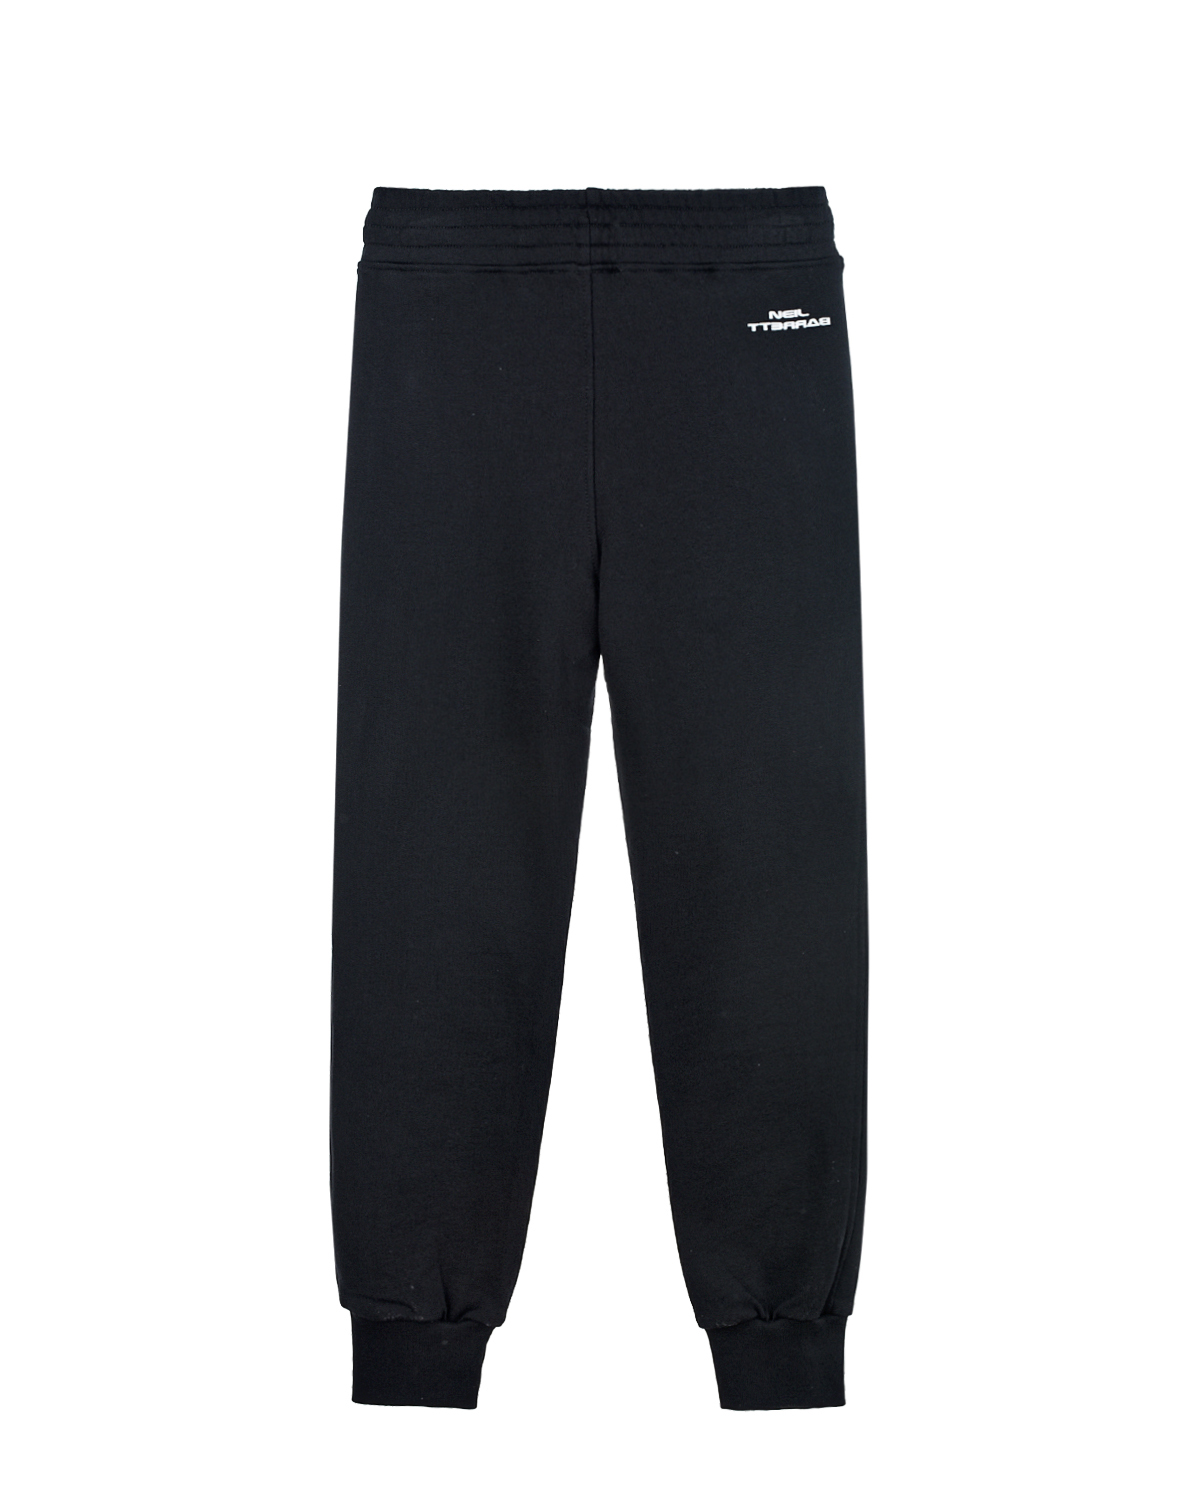 Спортивные брюки с принтом "Молнии" Neil Barrett детские, размер 140, цвет черный - фото 2